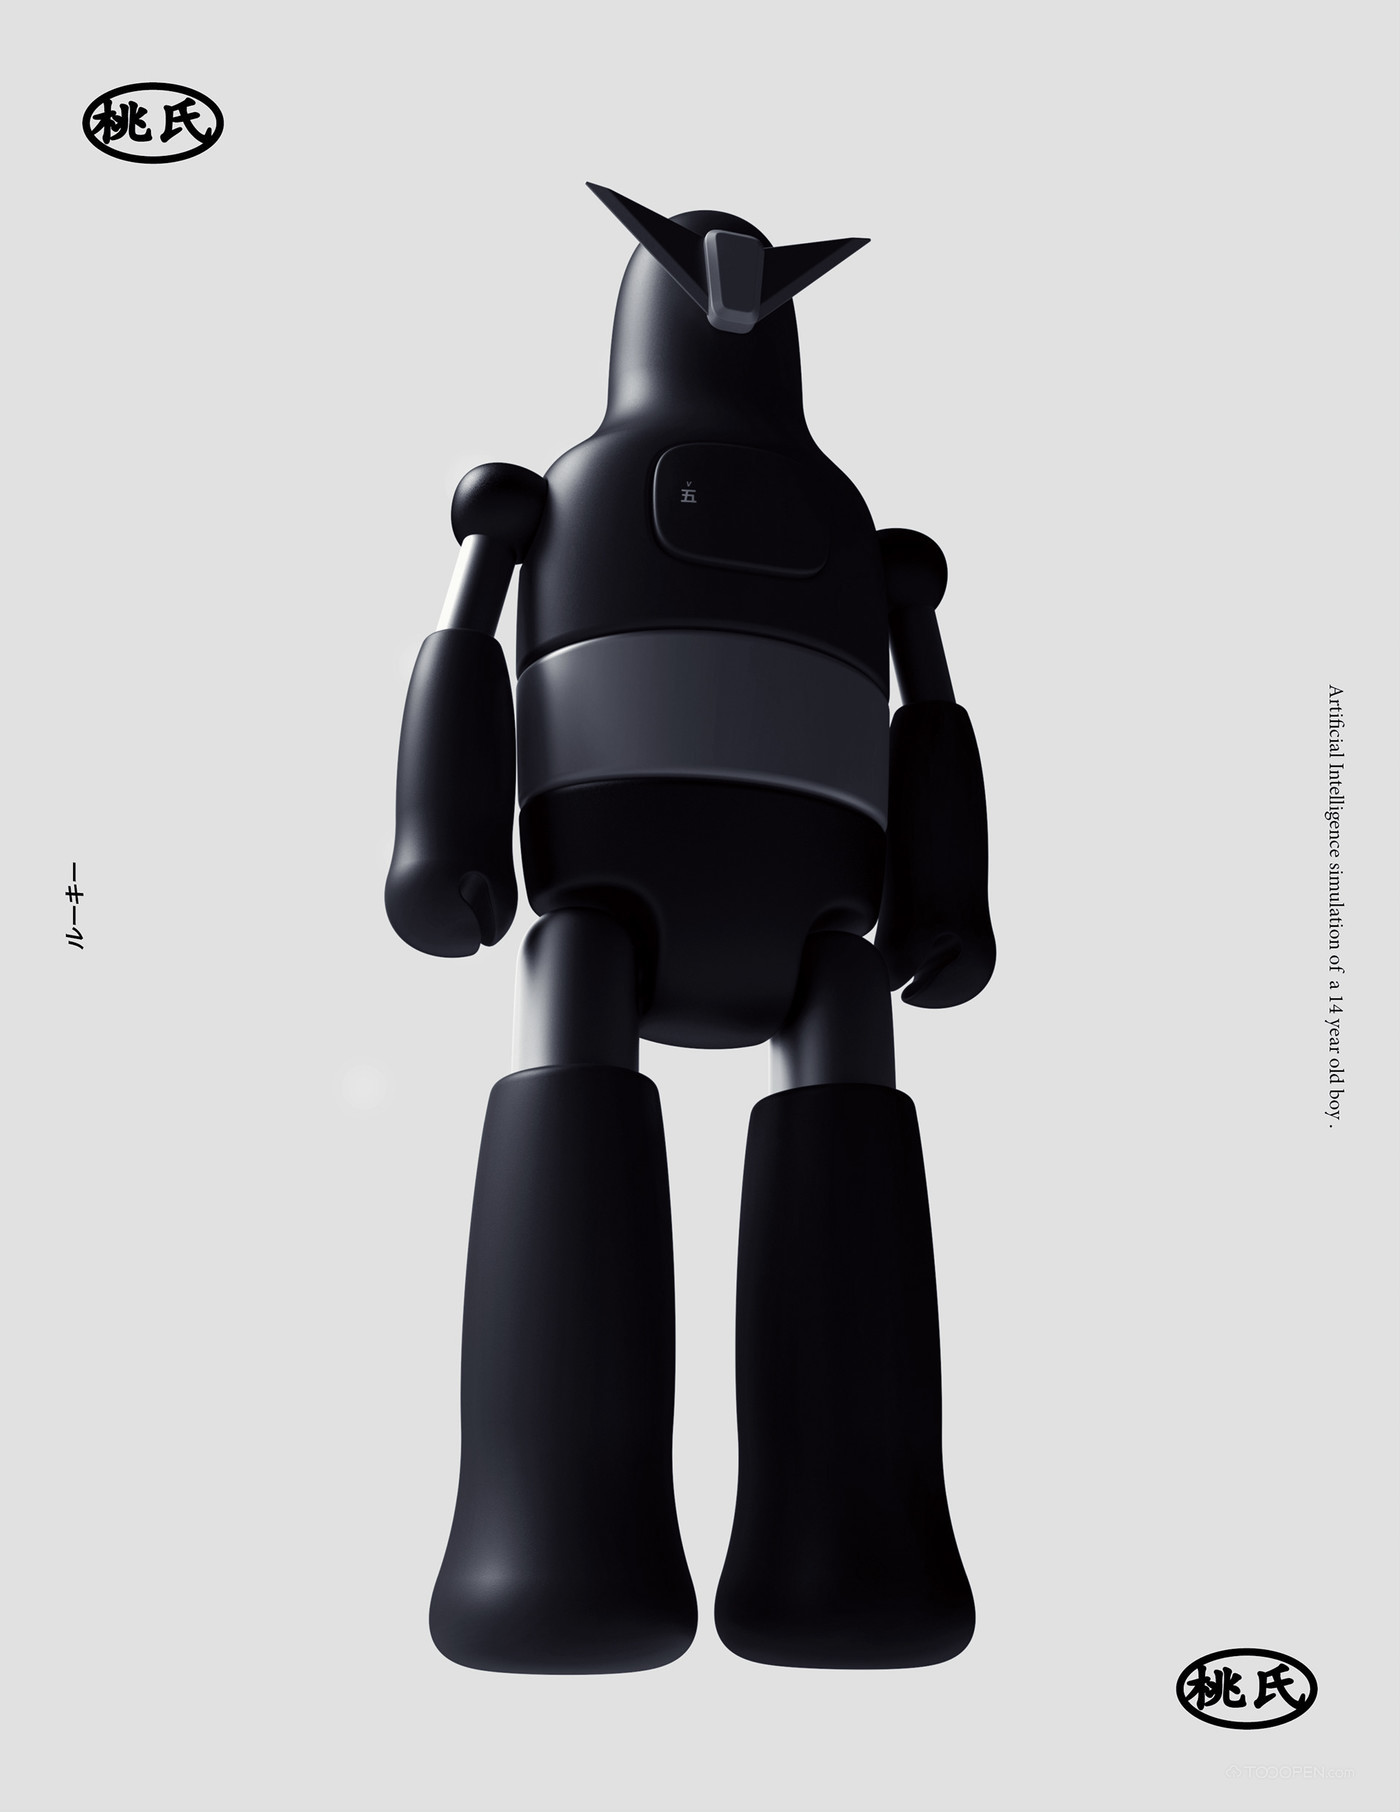 桃氏激光镭射机器人玩具设计欣赏-05